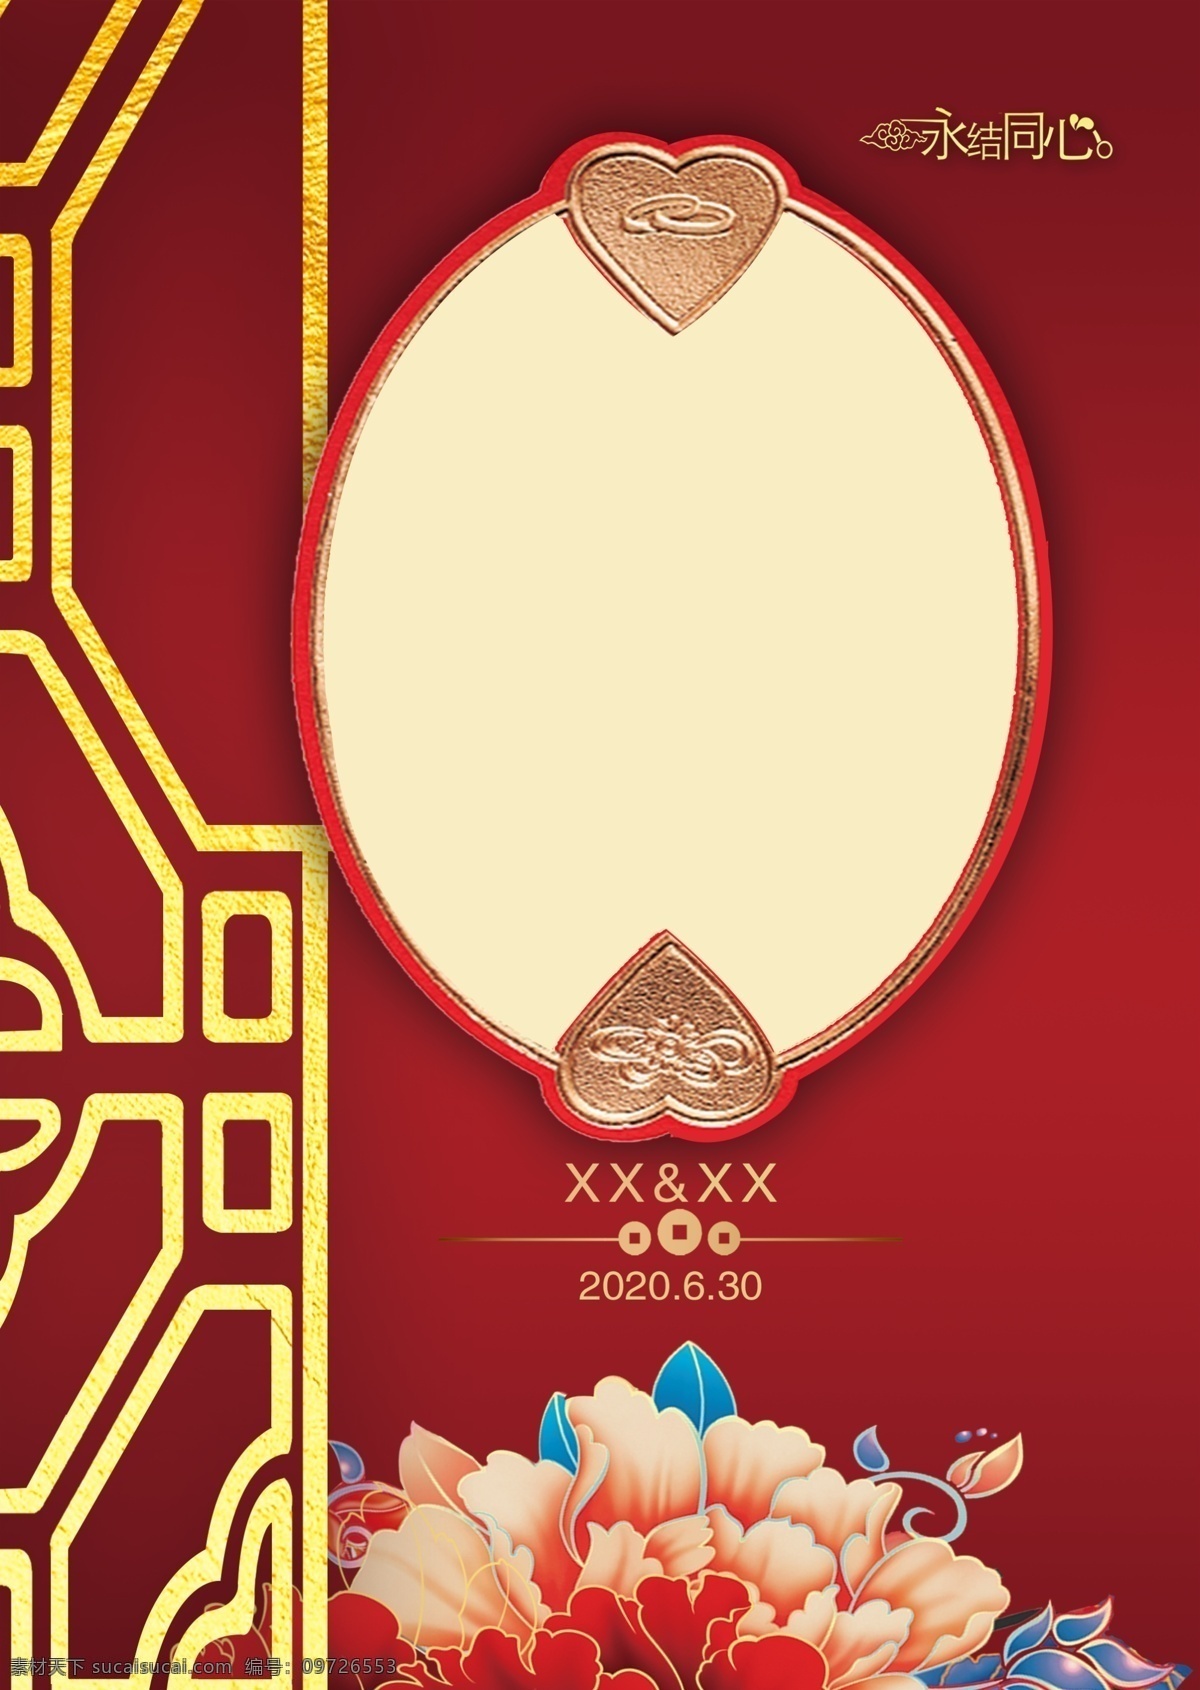 中式 婚礼 背景图片 中式婚礼背景 牡丹 金边框 心形 石榴红背景 中式婚礼素材 婚礼副背景 分层